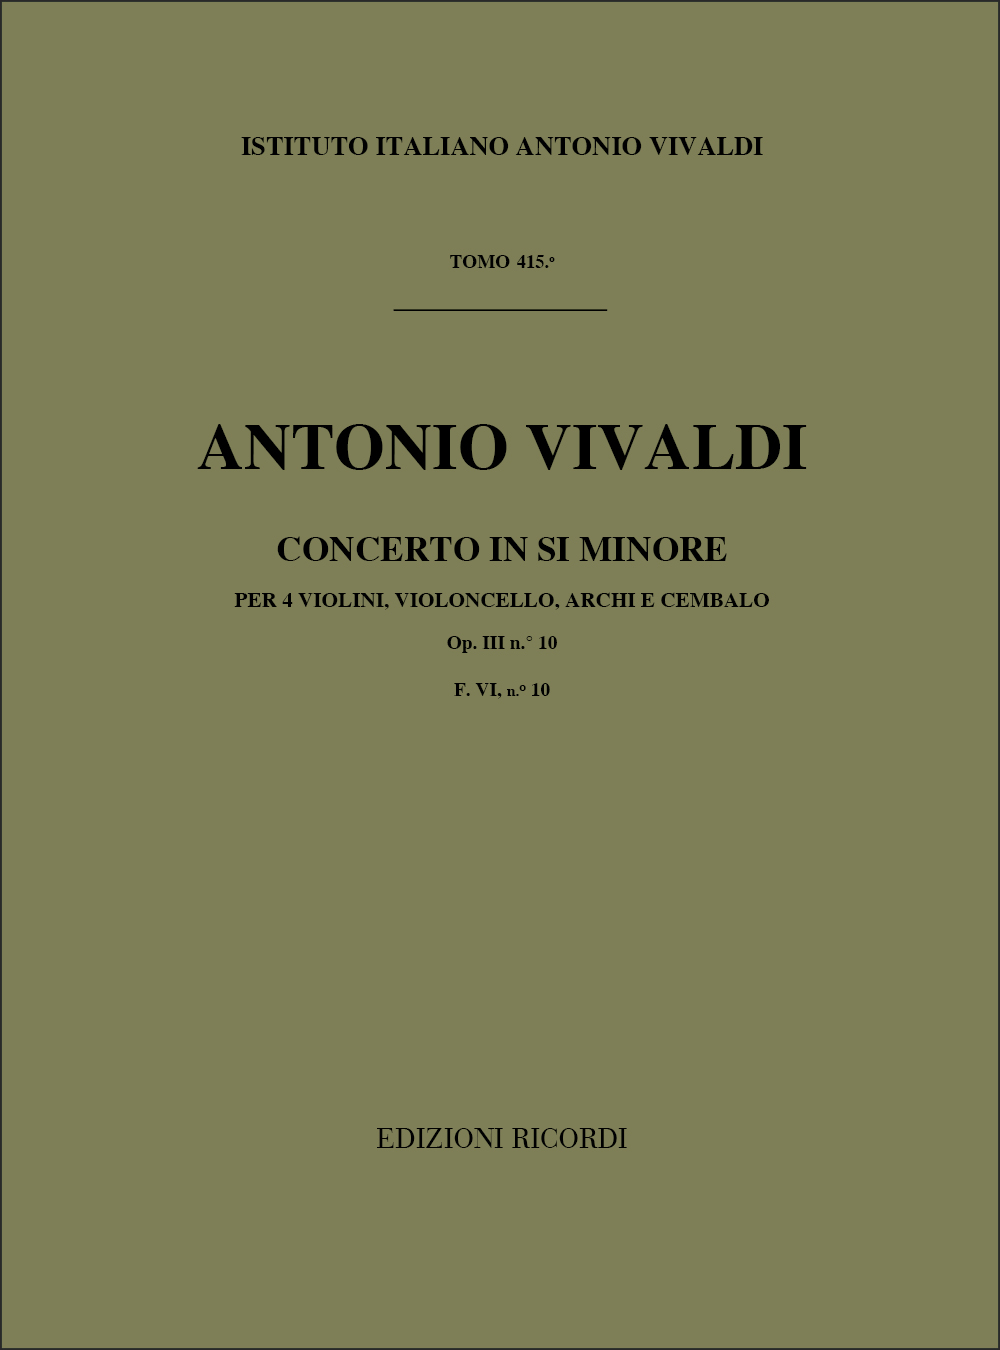 Antonio Vivaldi: Concerto In Si Minore Op. III N. 10 RV 580: Violin